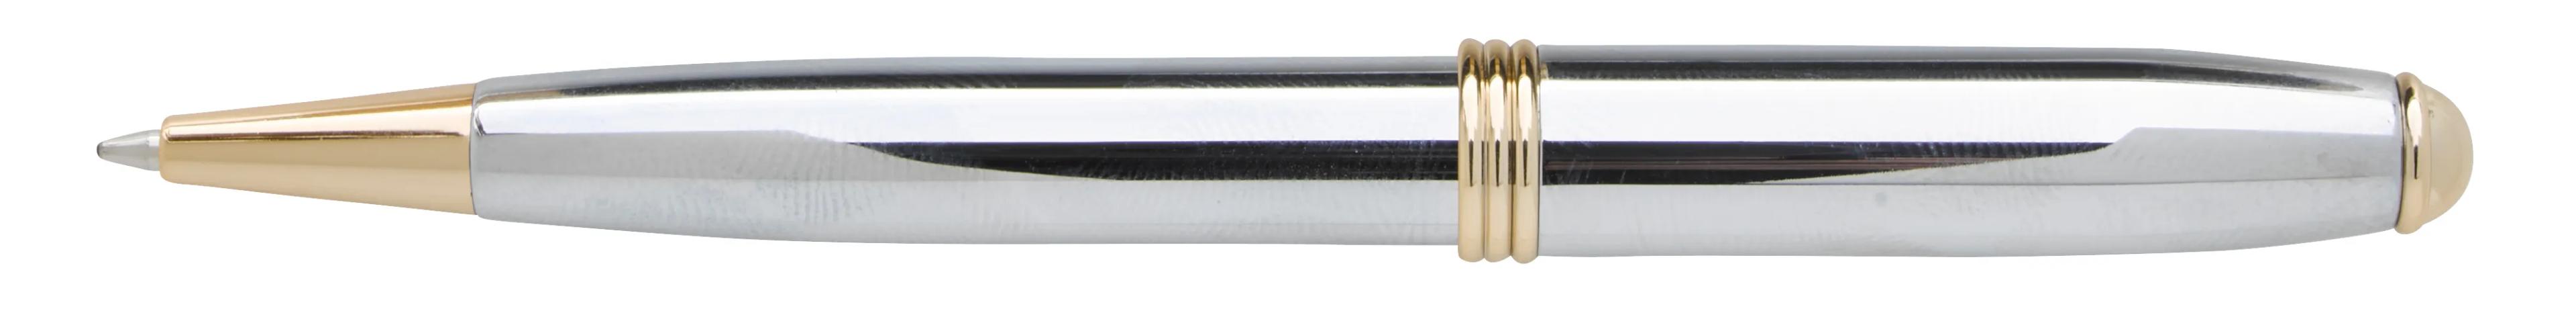 Souvenir® Worthington® Chrome Ballpoint Pen 3 of 8